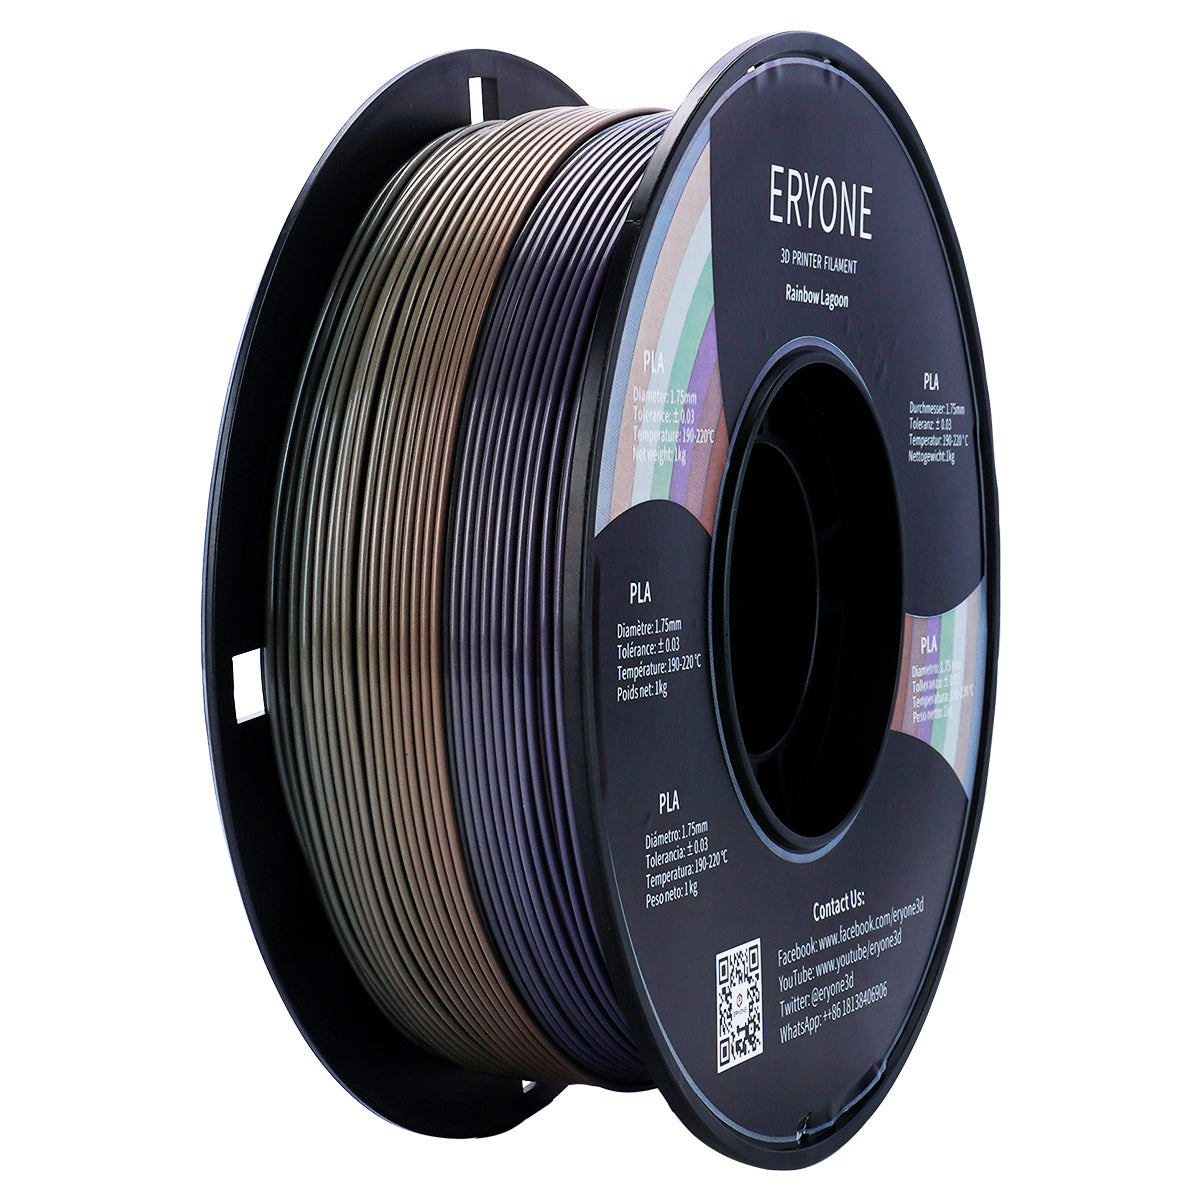 ERYONE Rainbow PLA Filament 1.75mm Filament for 3D Printer 1kg /Spool